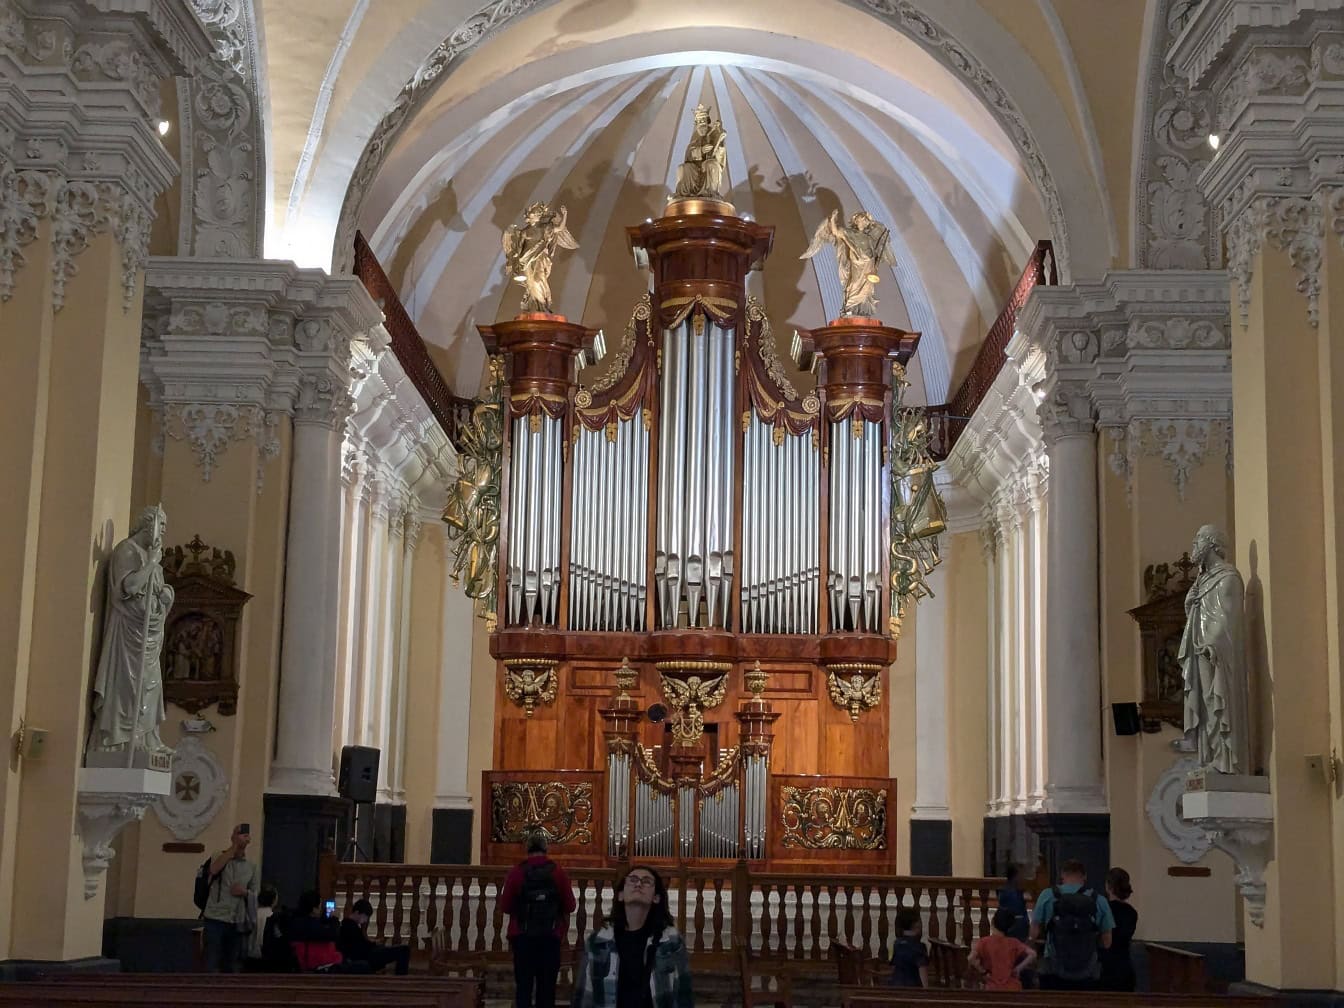 Παραδοσιακό βελγικό εκκλησιαστικό όργανο στον καθεδρικό ναό της Βασιλικής στην πόλη Arequipa στο Περού